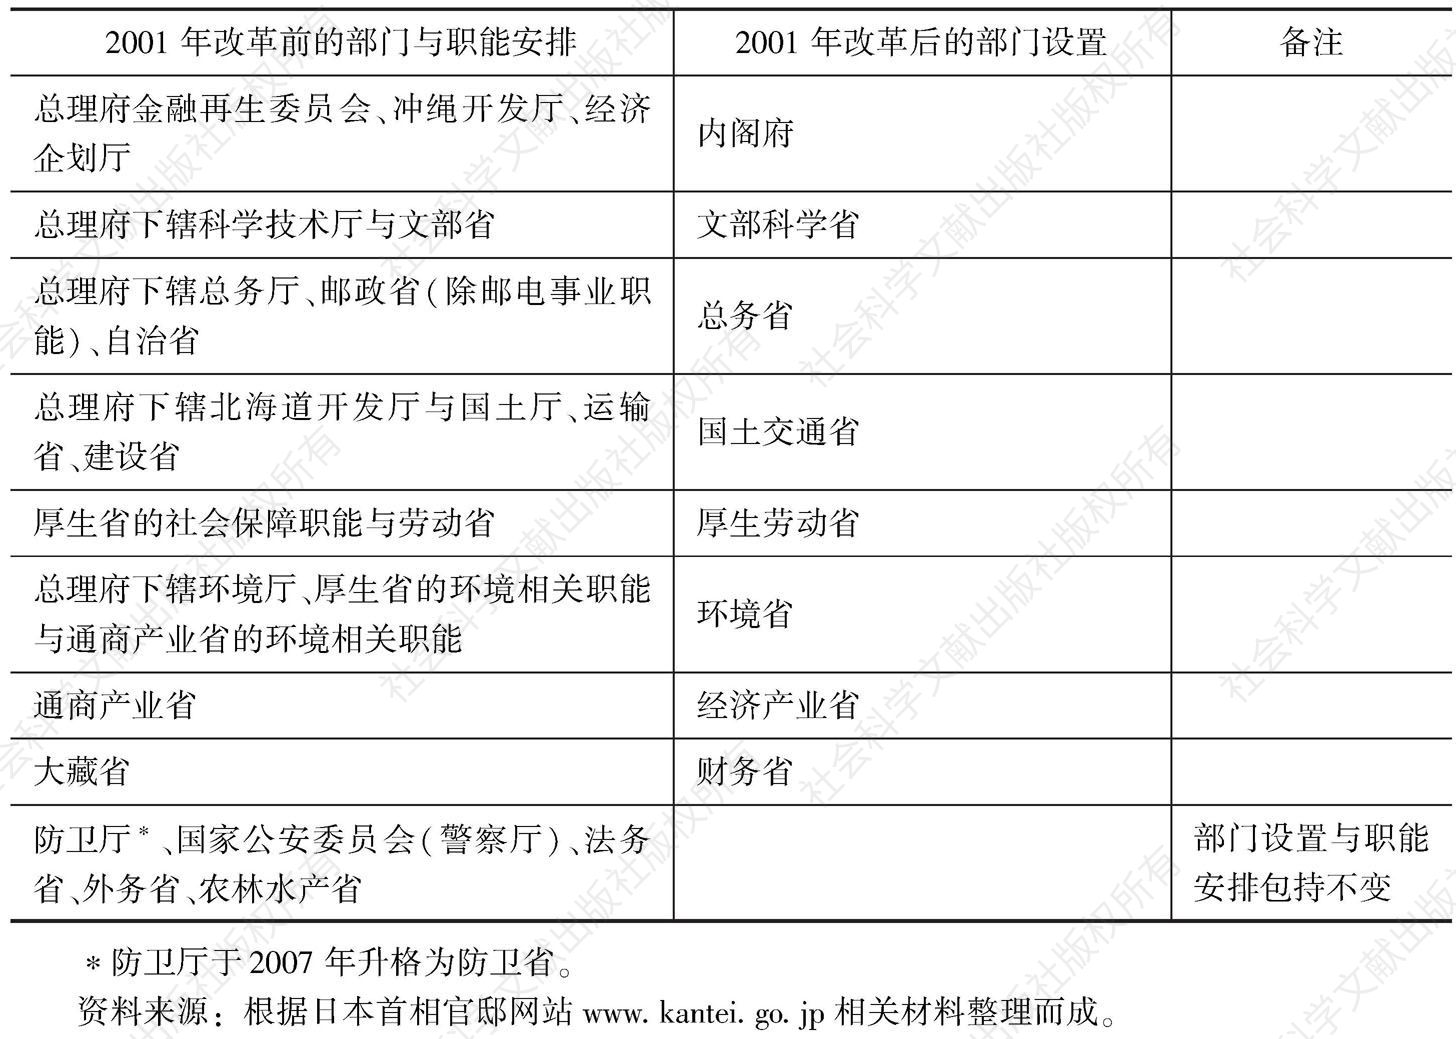 表6-10 2001年改革政府部门及职能调整表